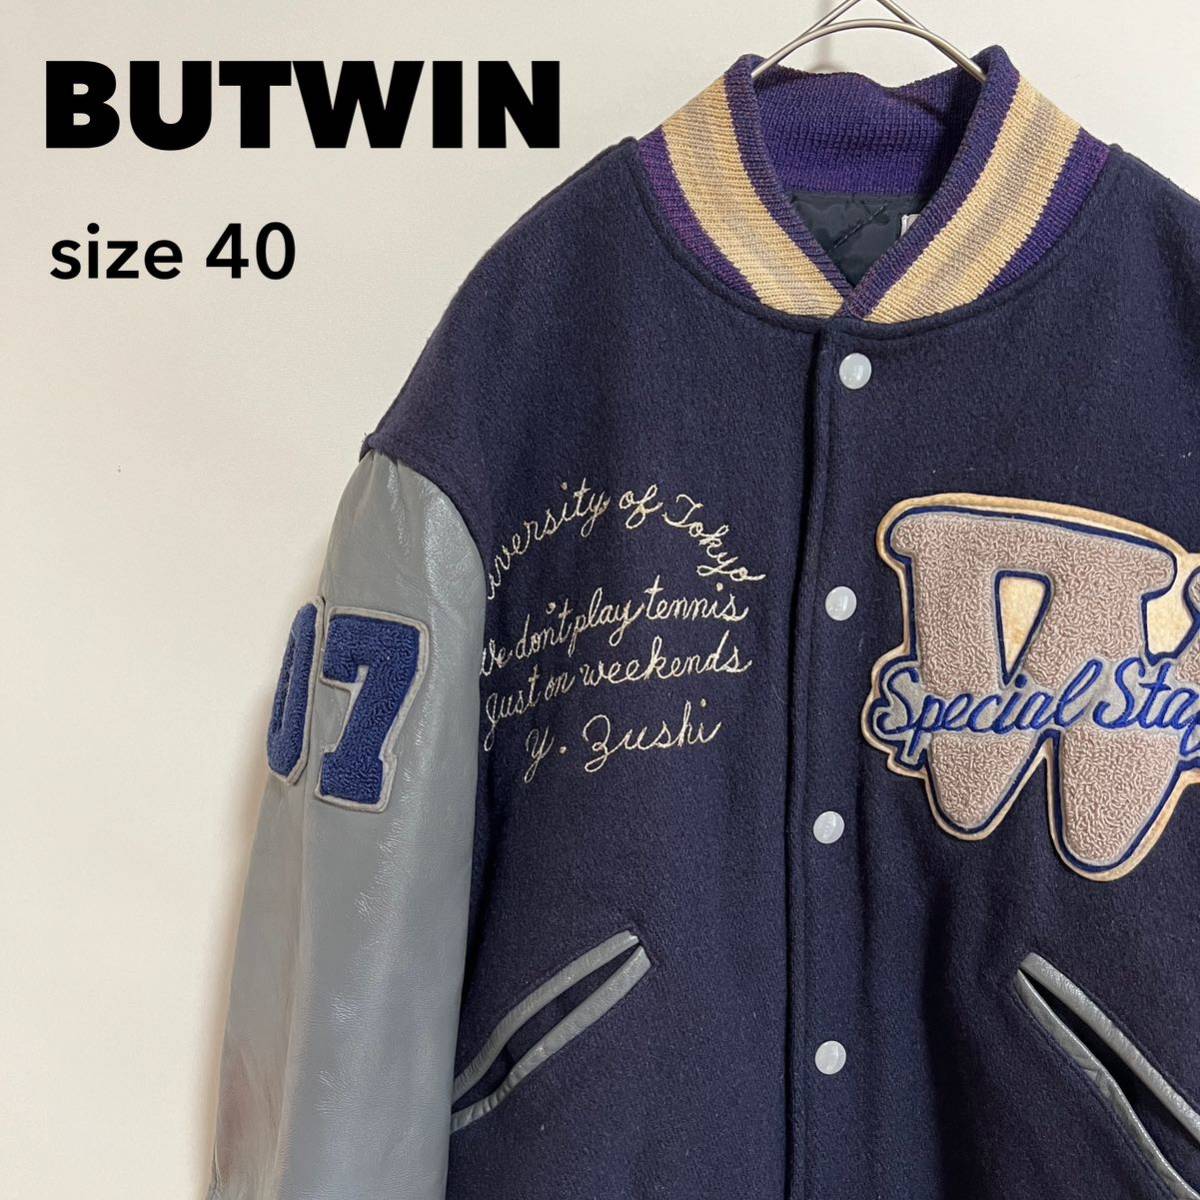 BUTWIN バトウィン スタジャン 70s 1970 ヴィンテージ ビンテージ レザー 袖革 デコレーション ワッペン ジャケット USA アウター _画像1